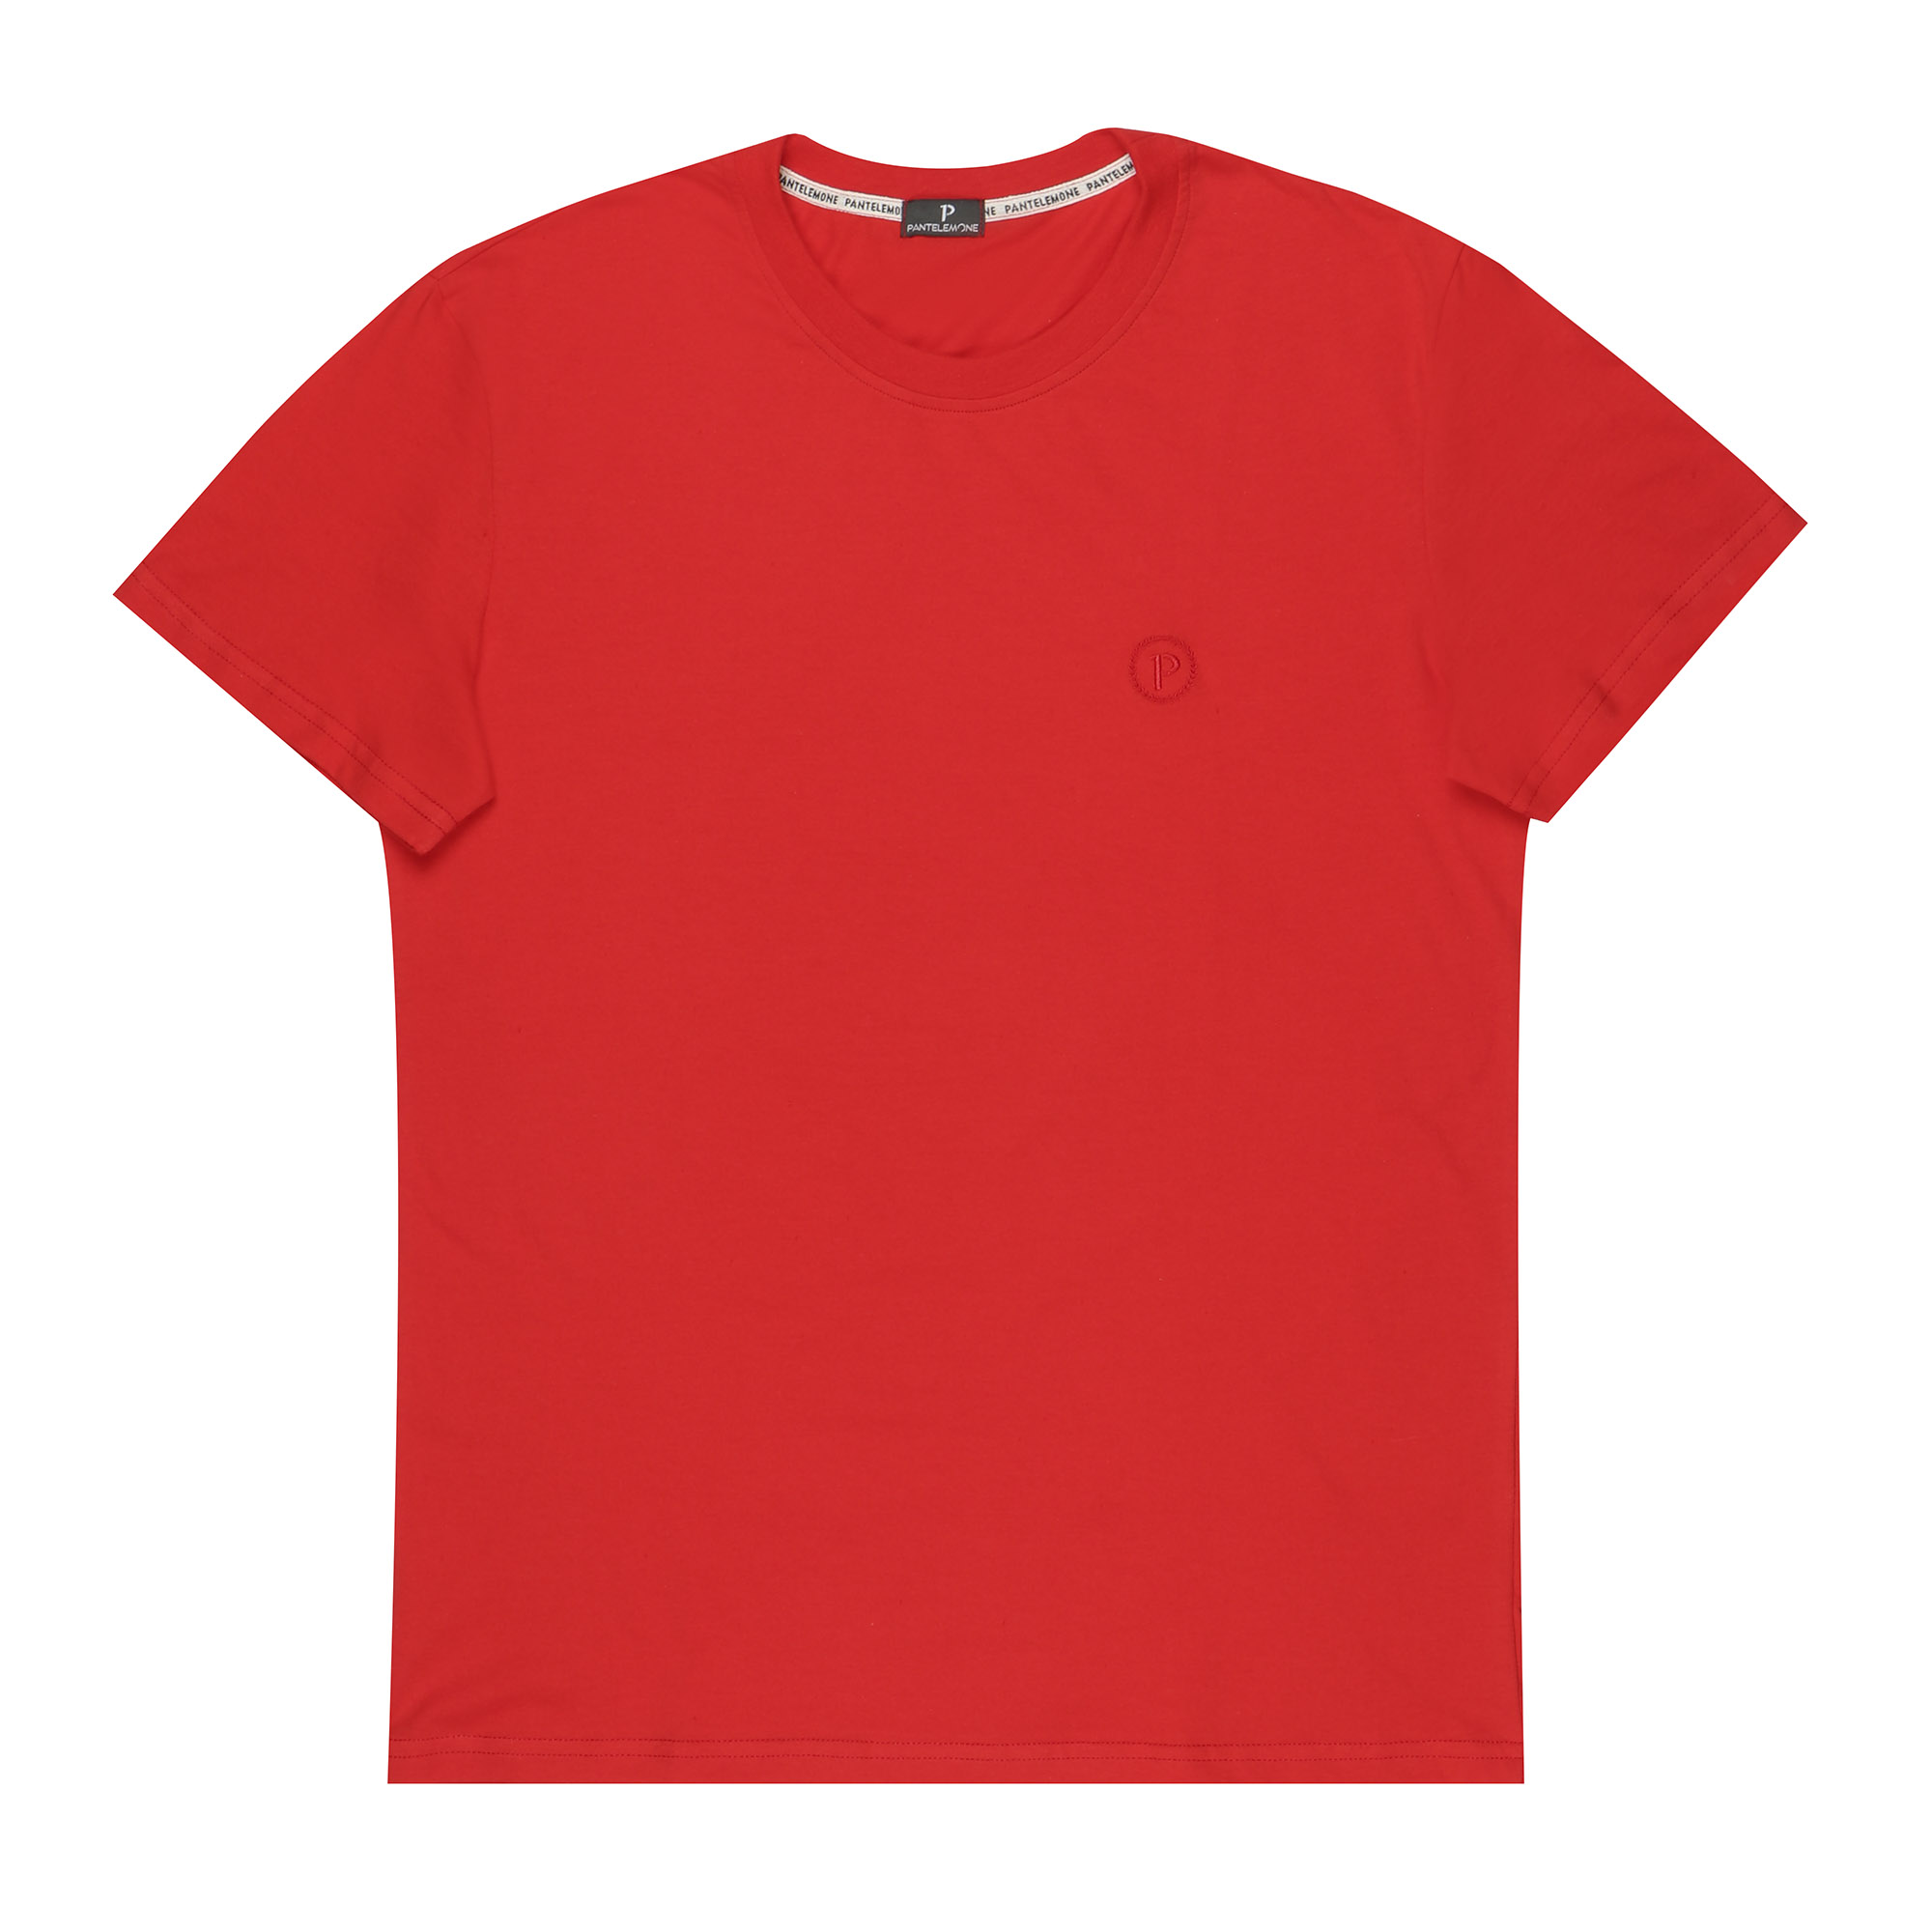 Мужская футболка Pantelemone MF-913 48 красная, цвет красный, размер 48 - фото 1